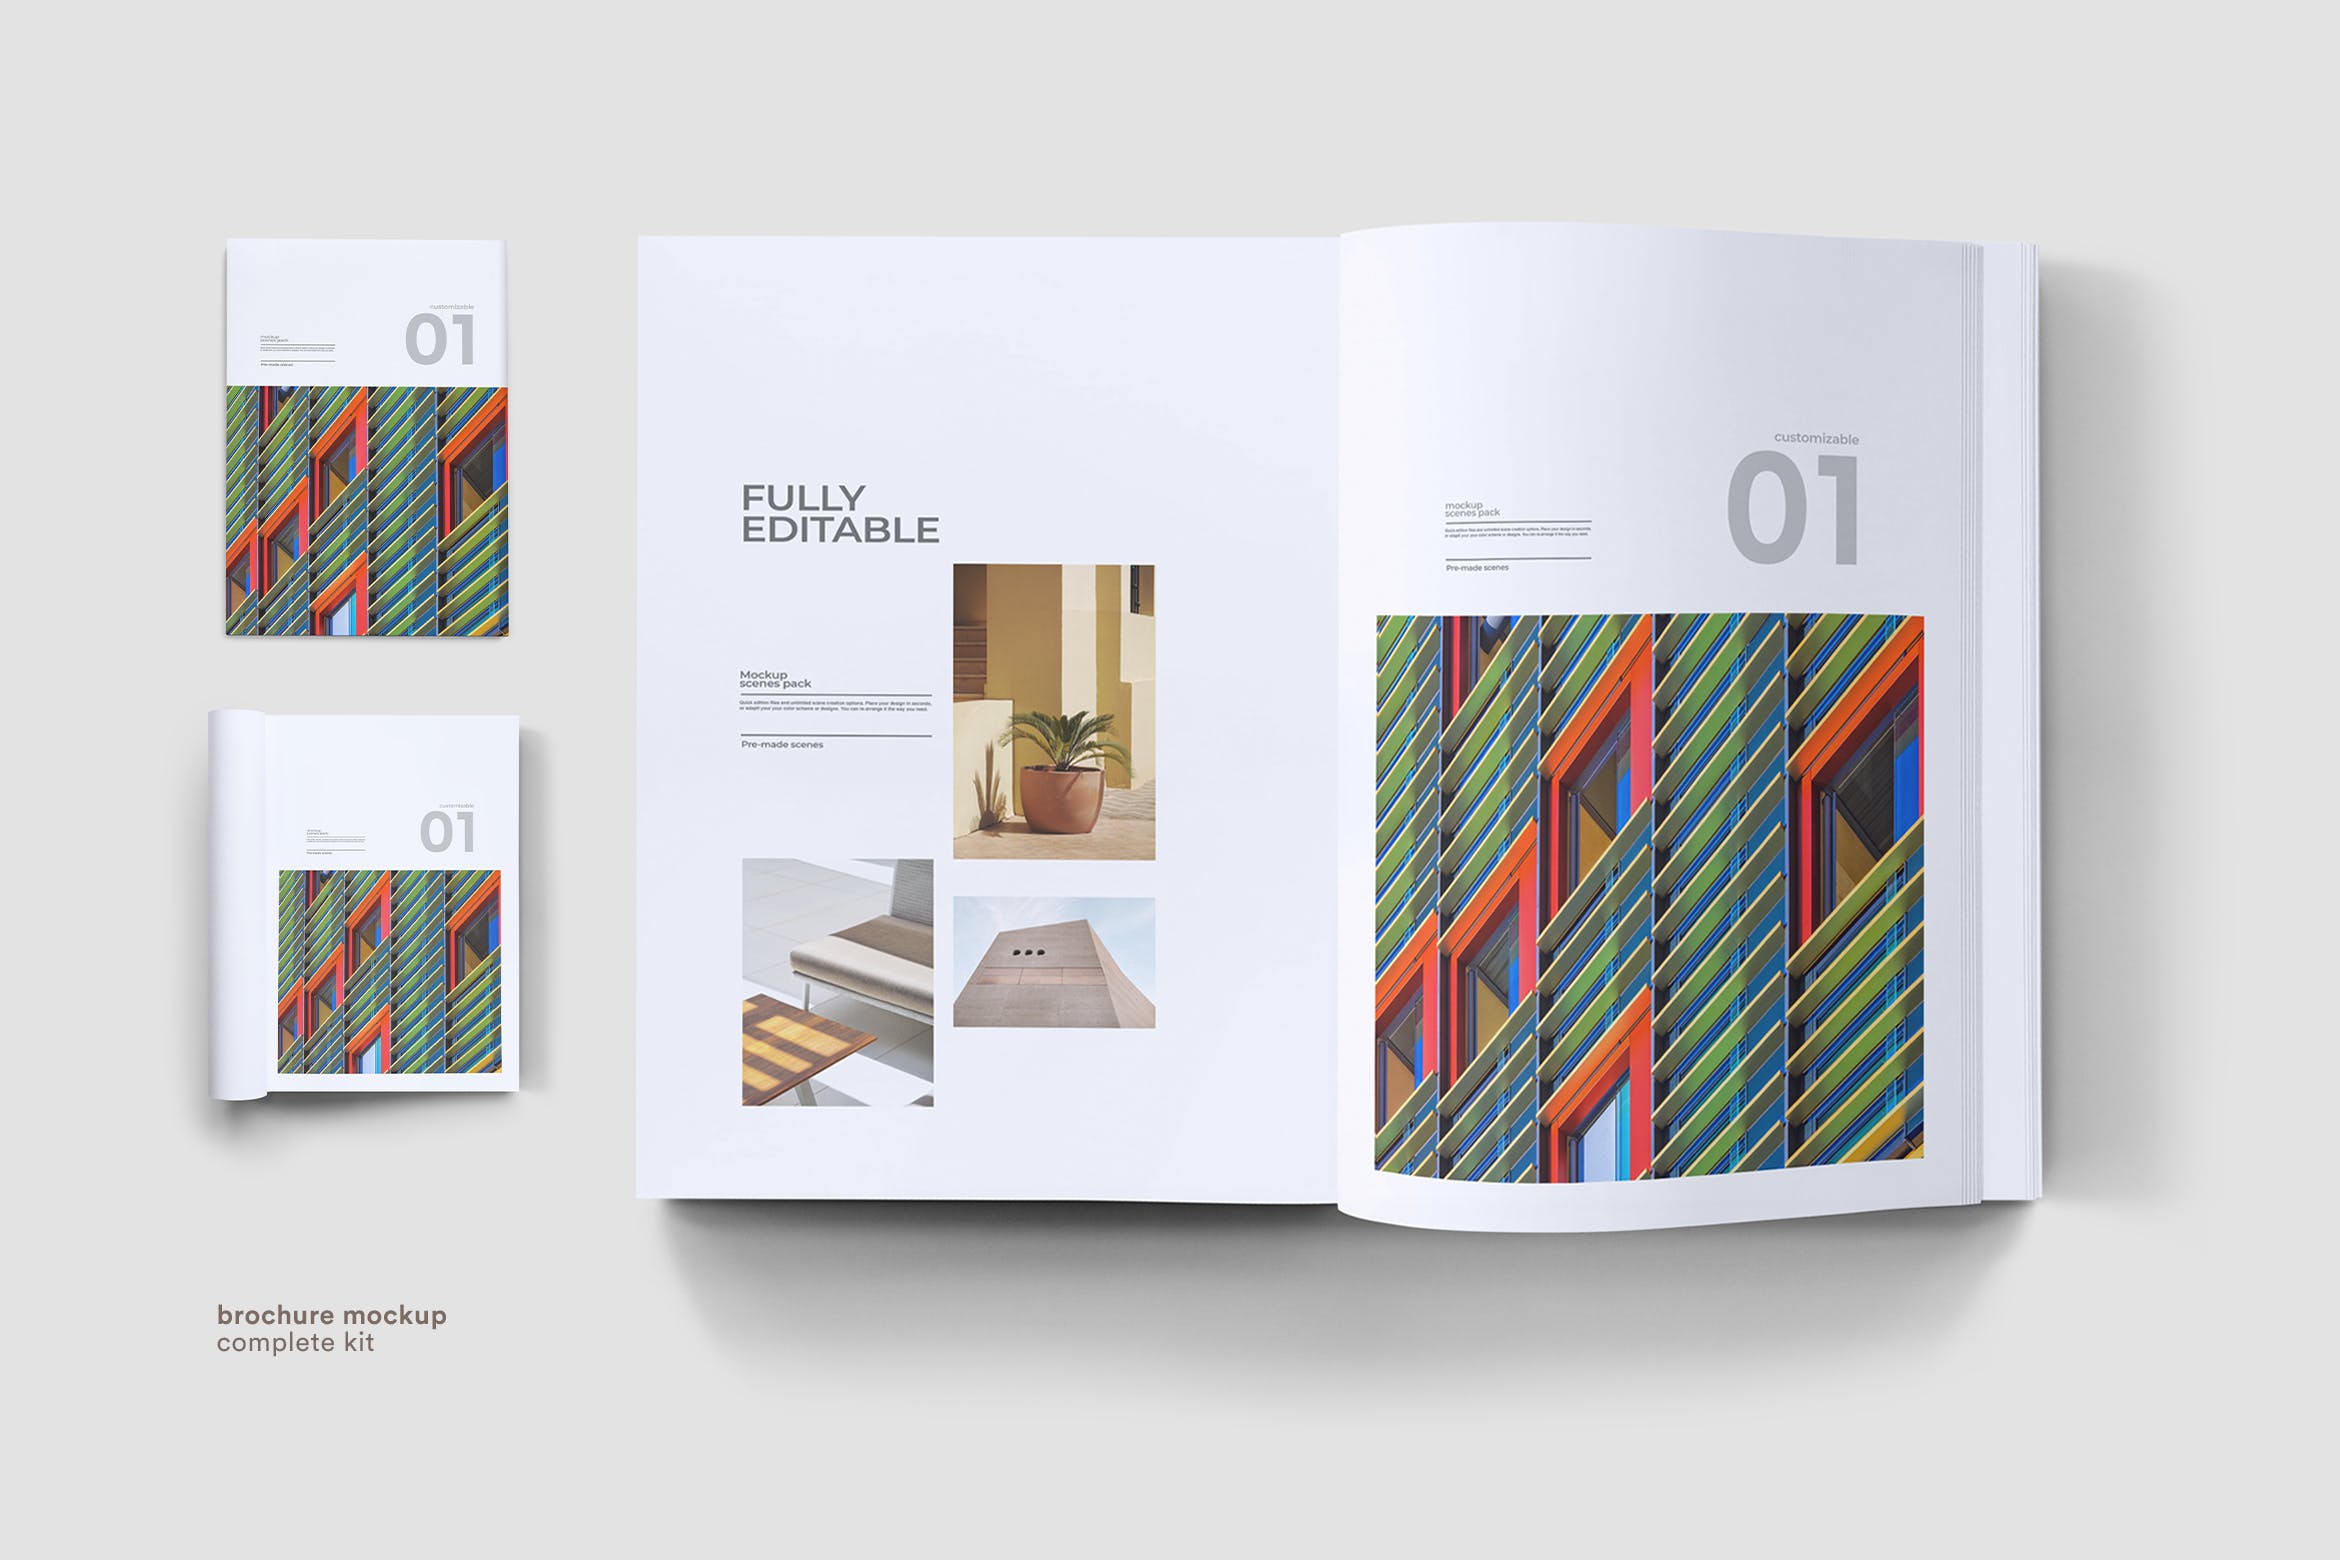 企业画册封面&版式设计效果图样机蚂蚁素材精选 Brochure Mock Up插图